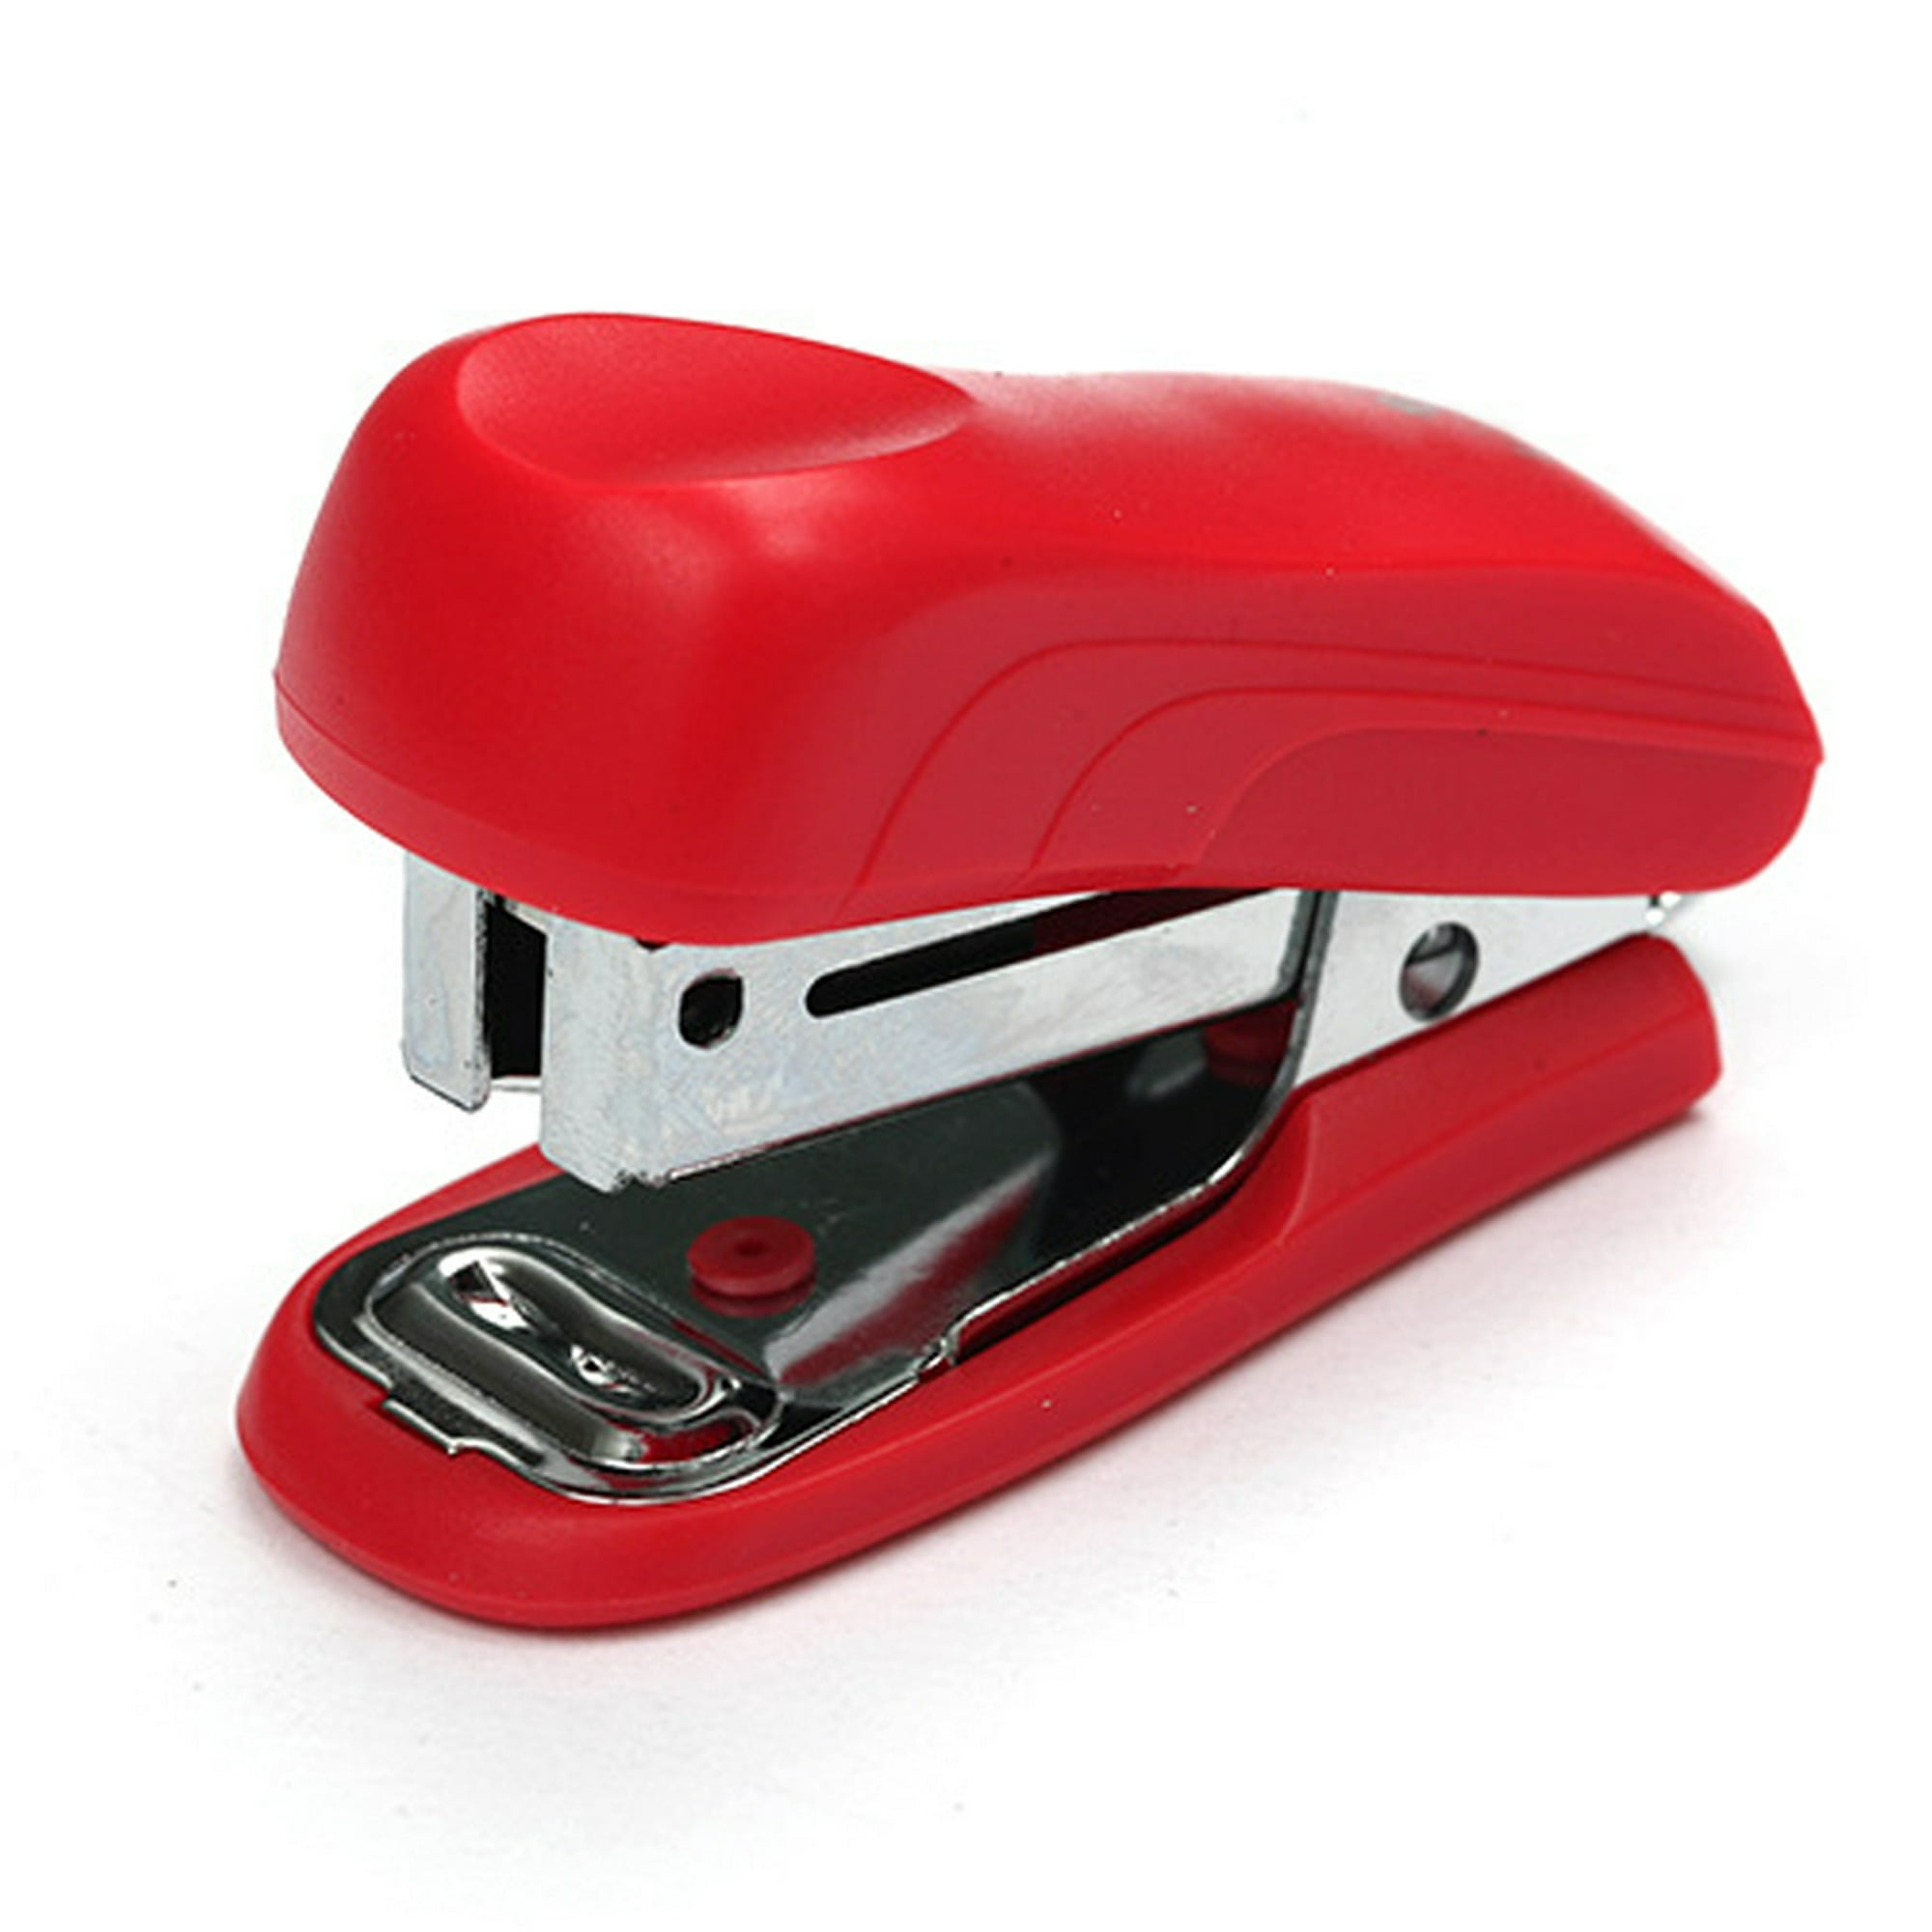  Swingline Mini grapadora roja con grapas, capacidad para 12  hojas, grapadora pequeña con removedor de grapas integrado y 1000 grapas  estándar, almacenamiento de grapas, bonita engrapadora compacta de tamaño  de viaje